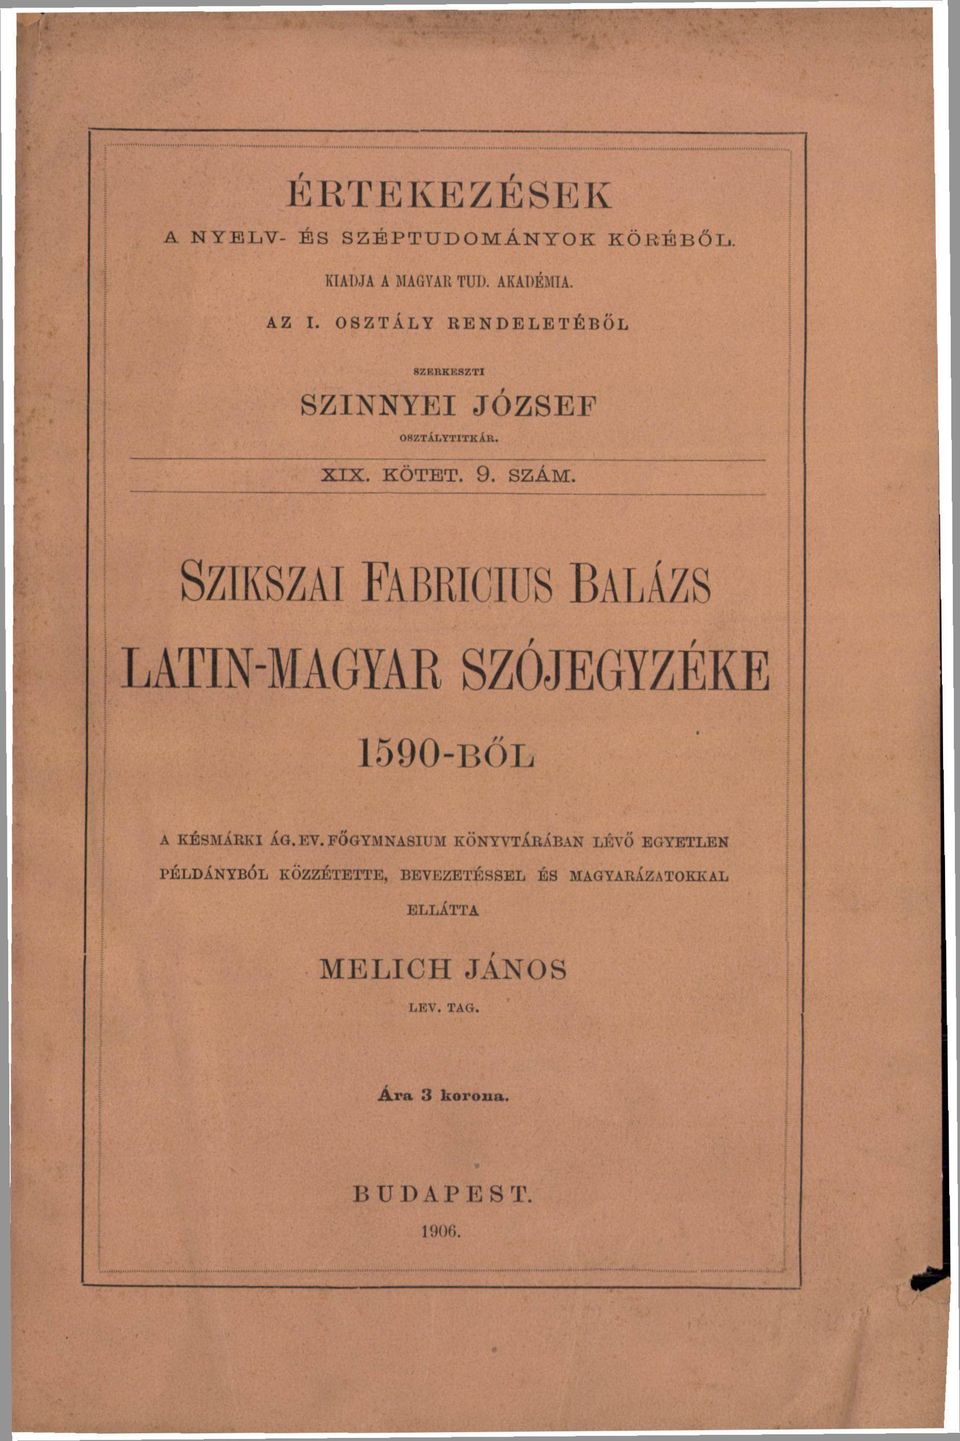 SZIKSZAI FABRICIUS BALÁZS LATIN-MAGYAR SZÓJEGYZÉKE 1590-BŐL A KÉSMÁRKI ÁG.EV.